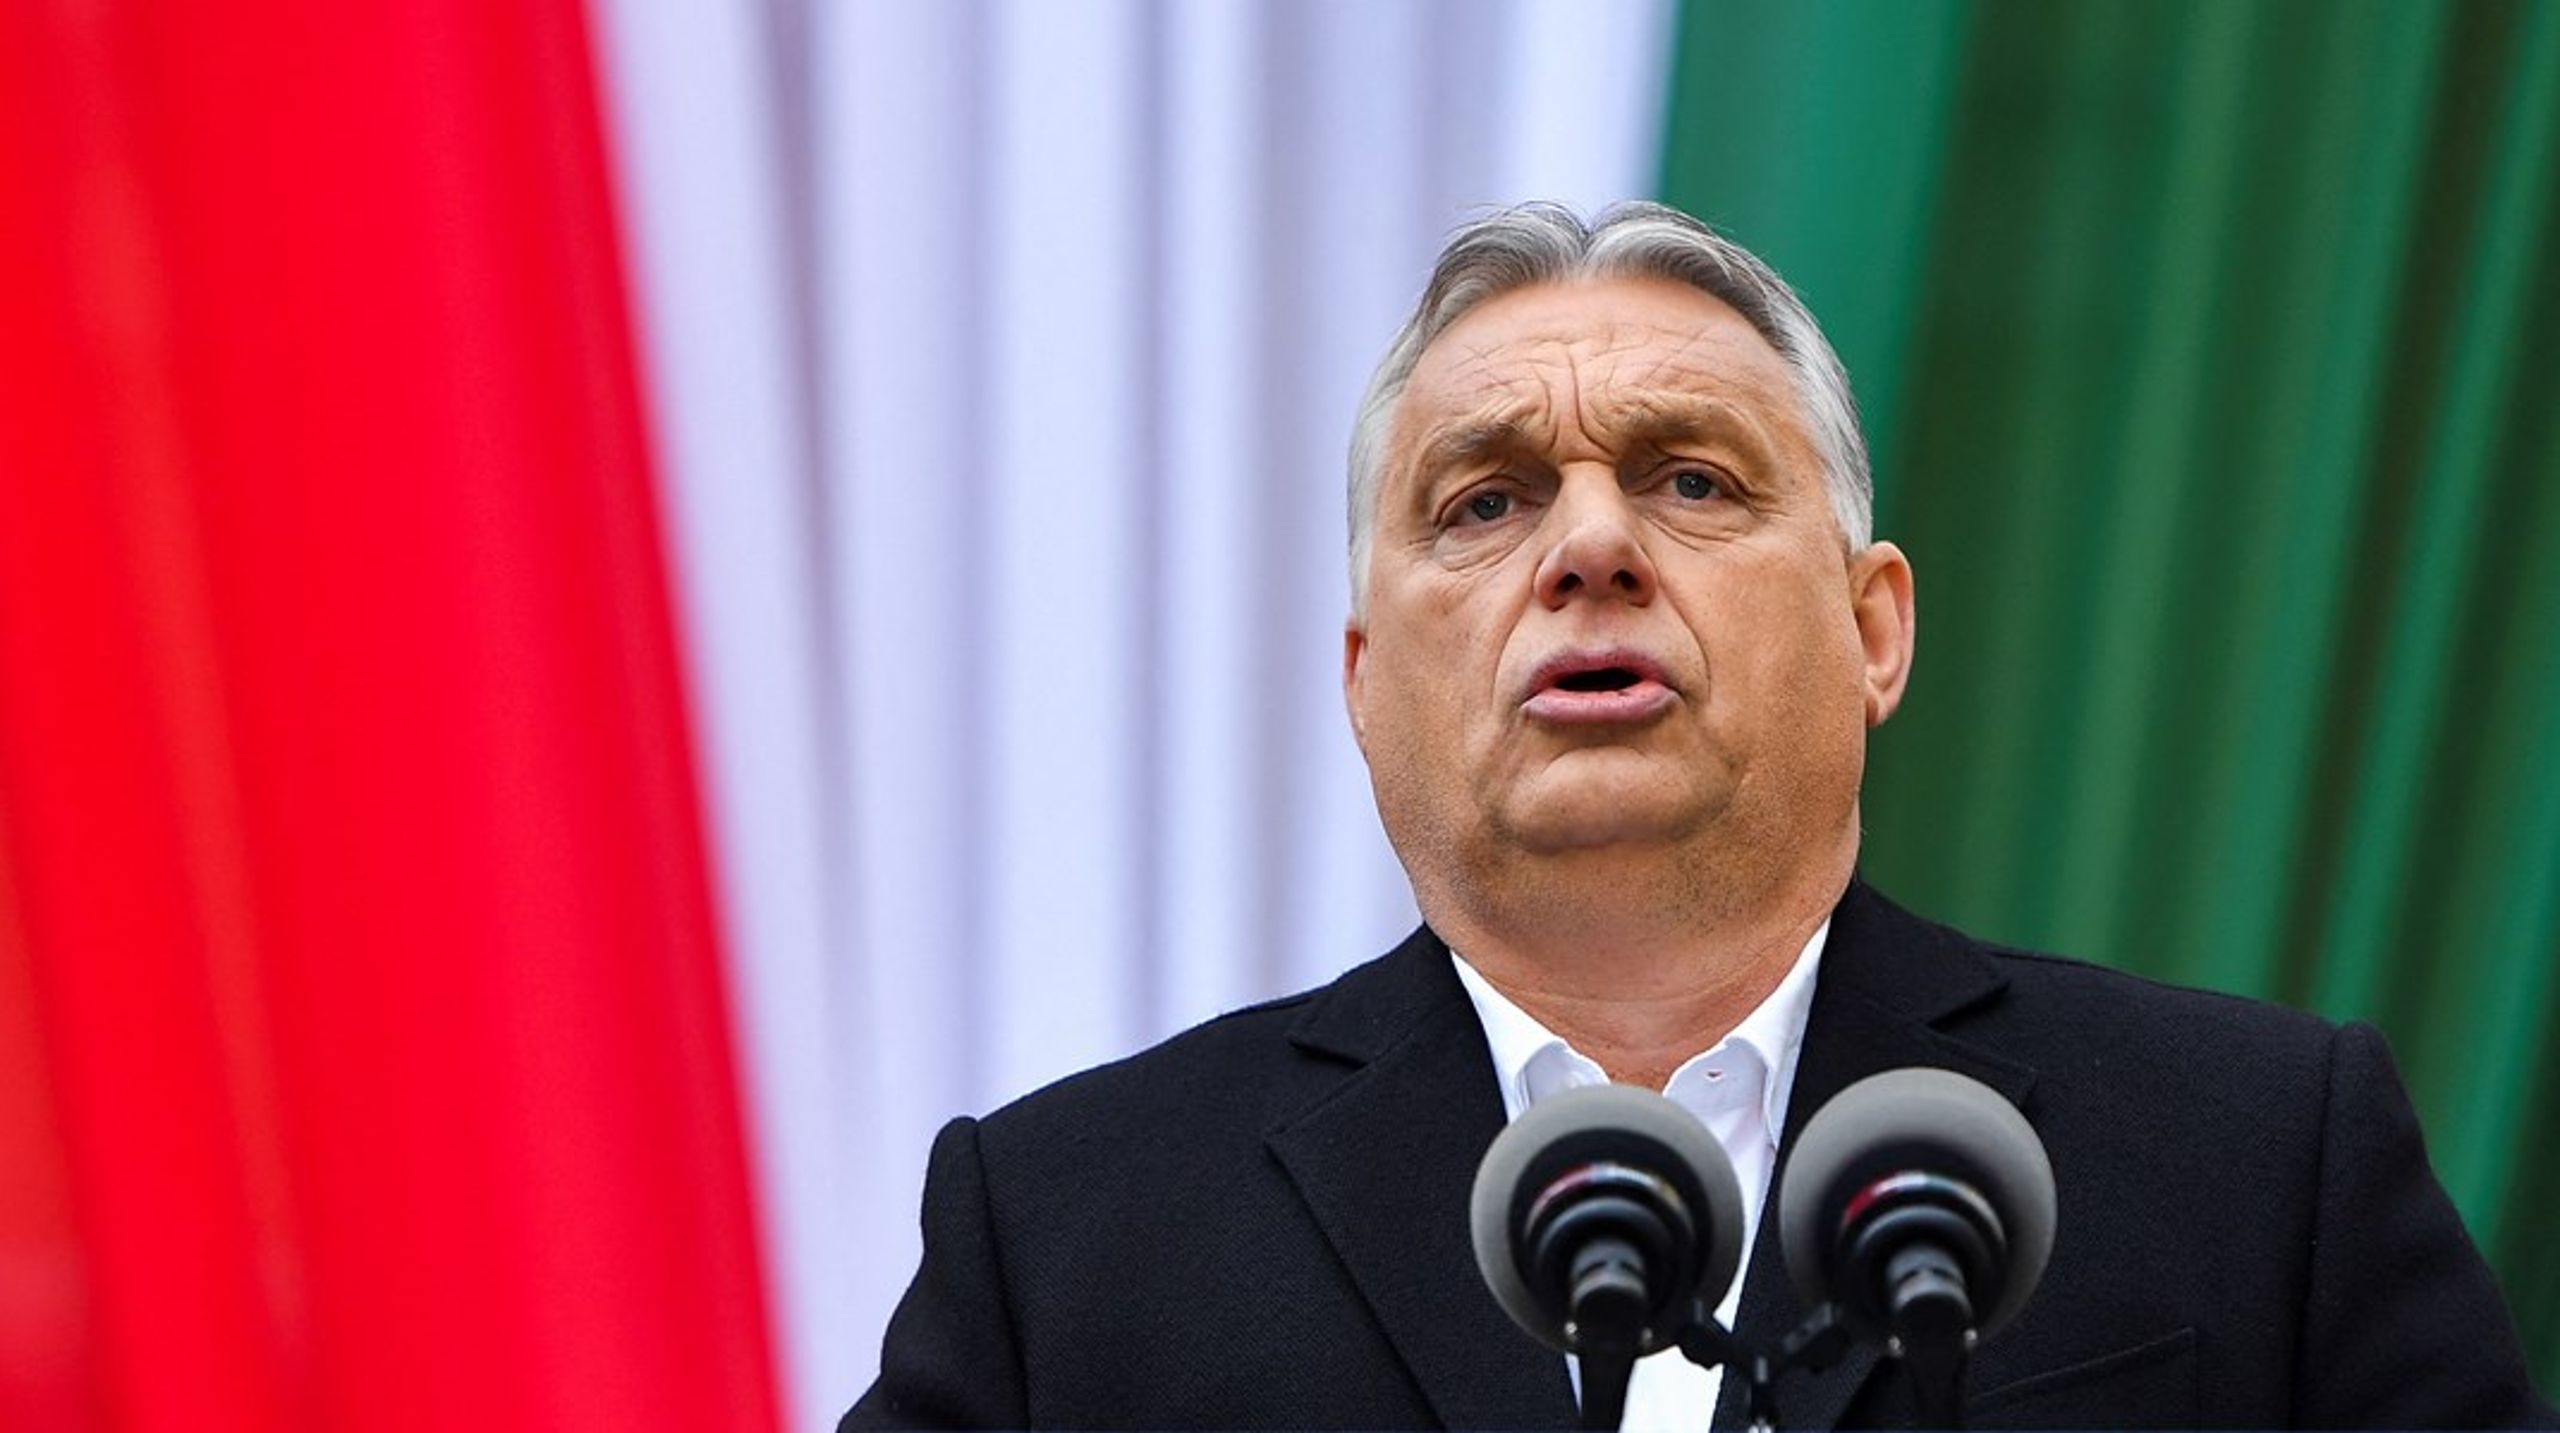 Viktor Orbáns fortælling om LGBT-personer er et forsøg på at skræmme og mobilisere konservative vælgere, siger Dávid Vig, direktør hos Amnesty Internation Ungarn